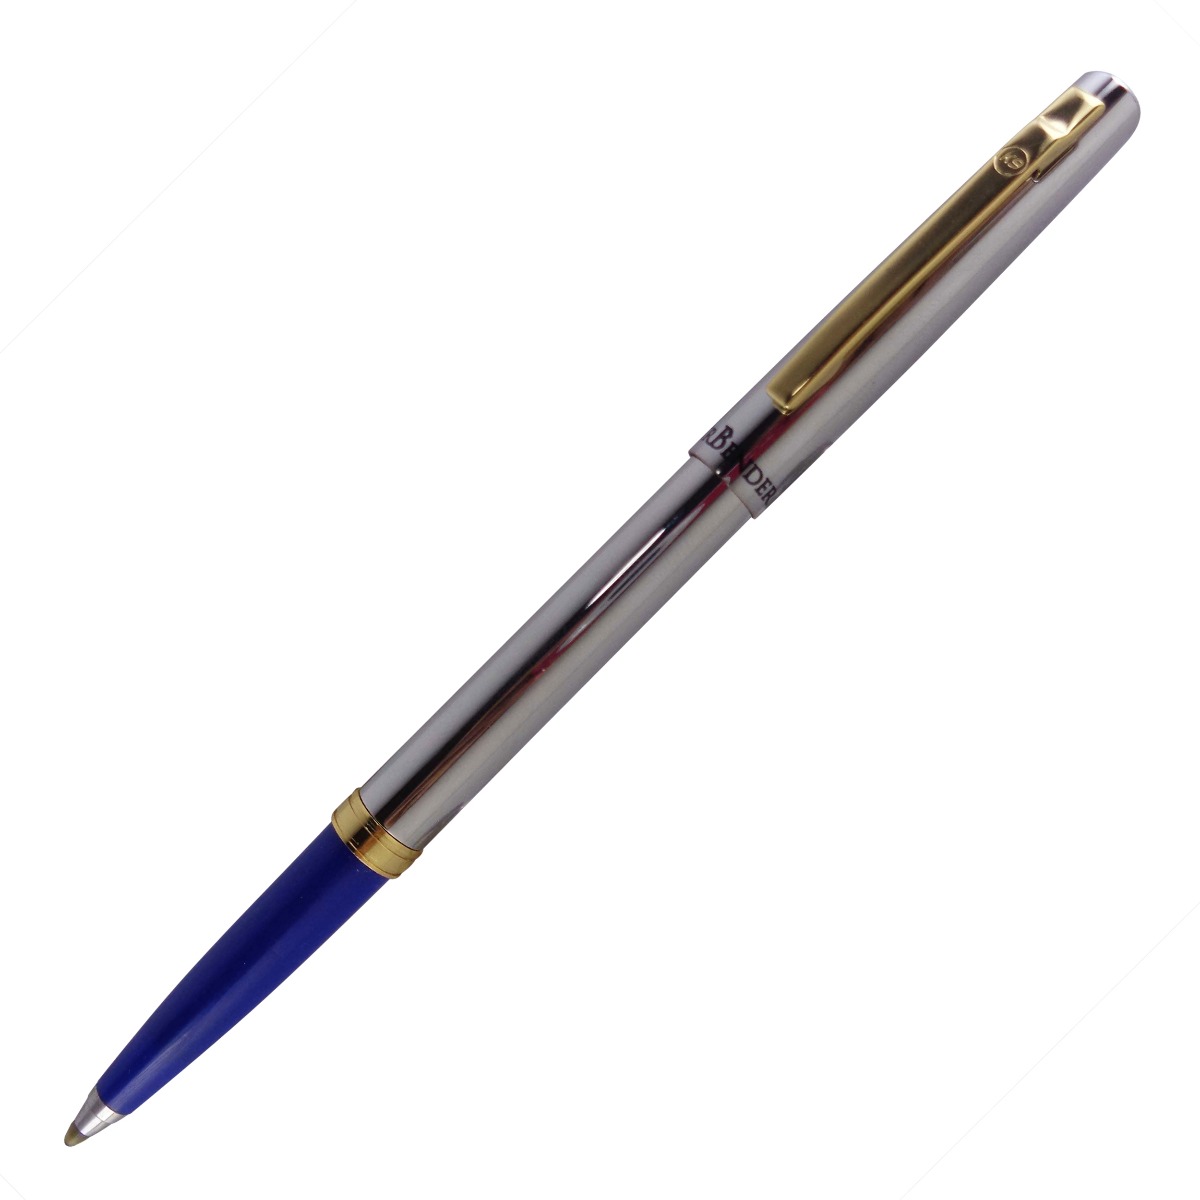 K-Nine Model: 15200 Air Bender V2 Silver color body with golden clip fine tip cap type roller ball pen